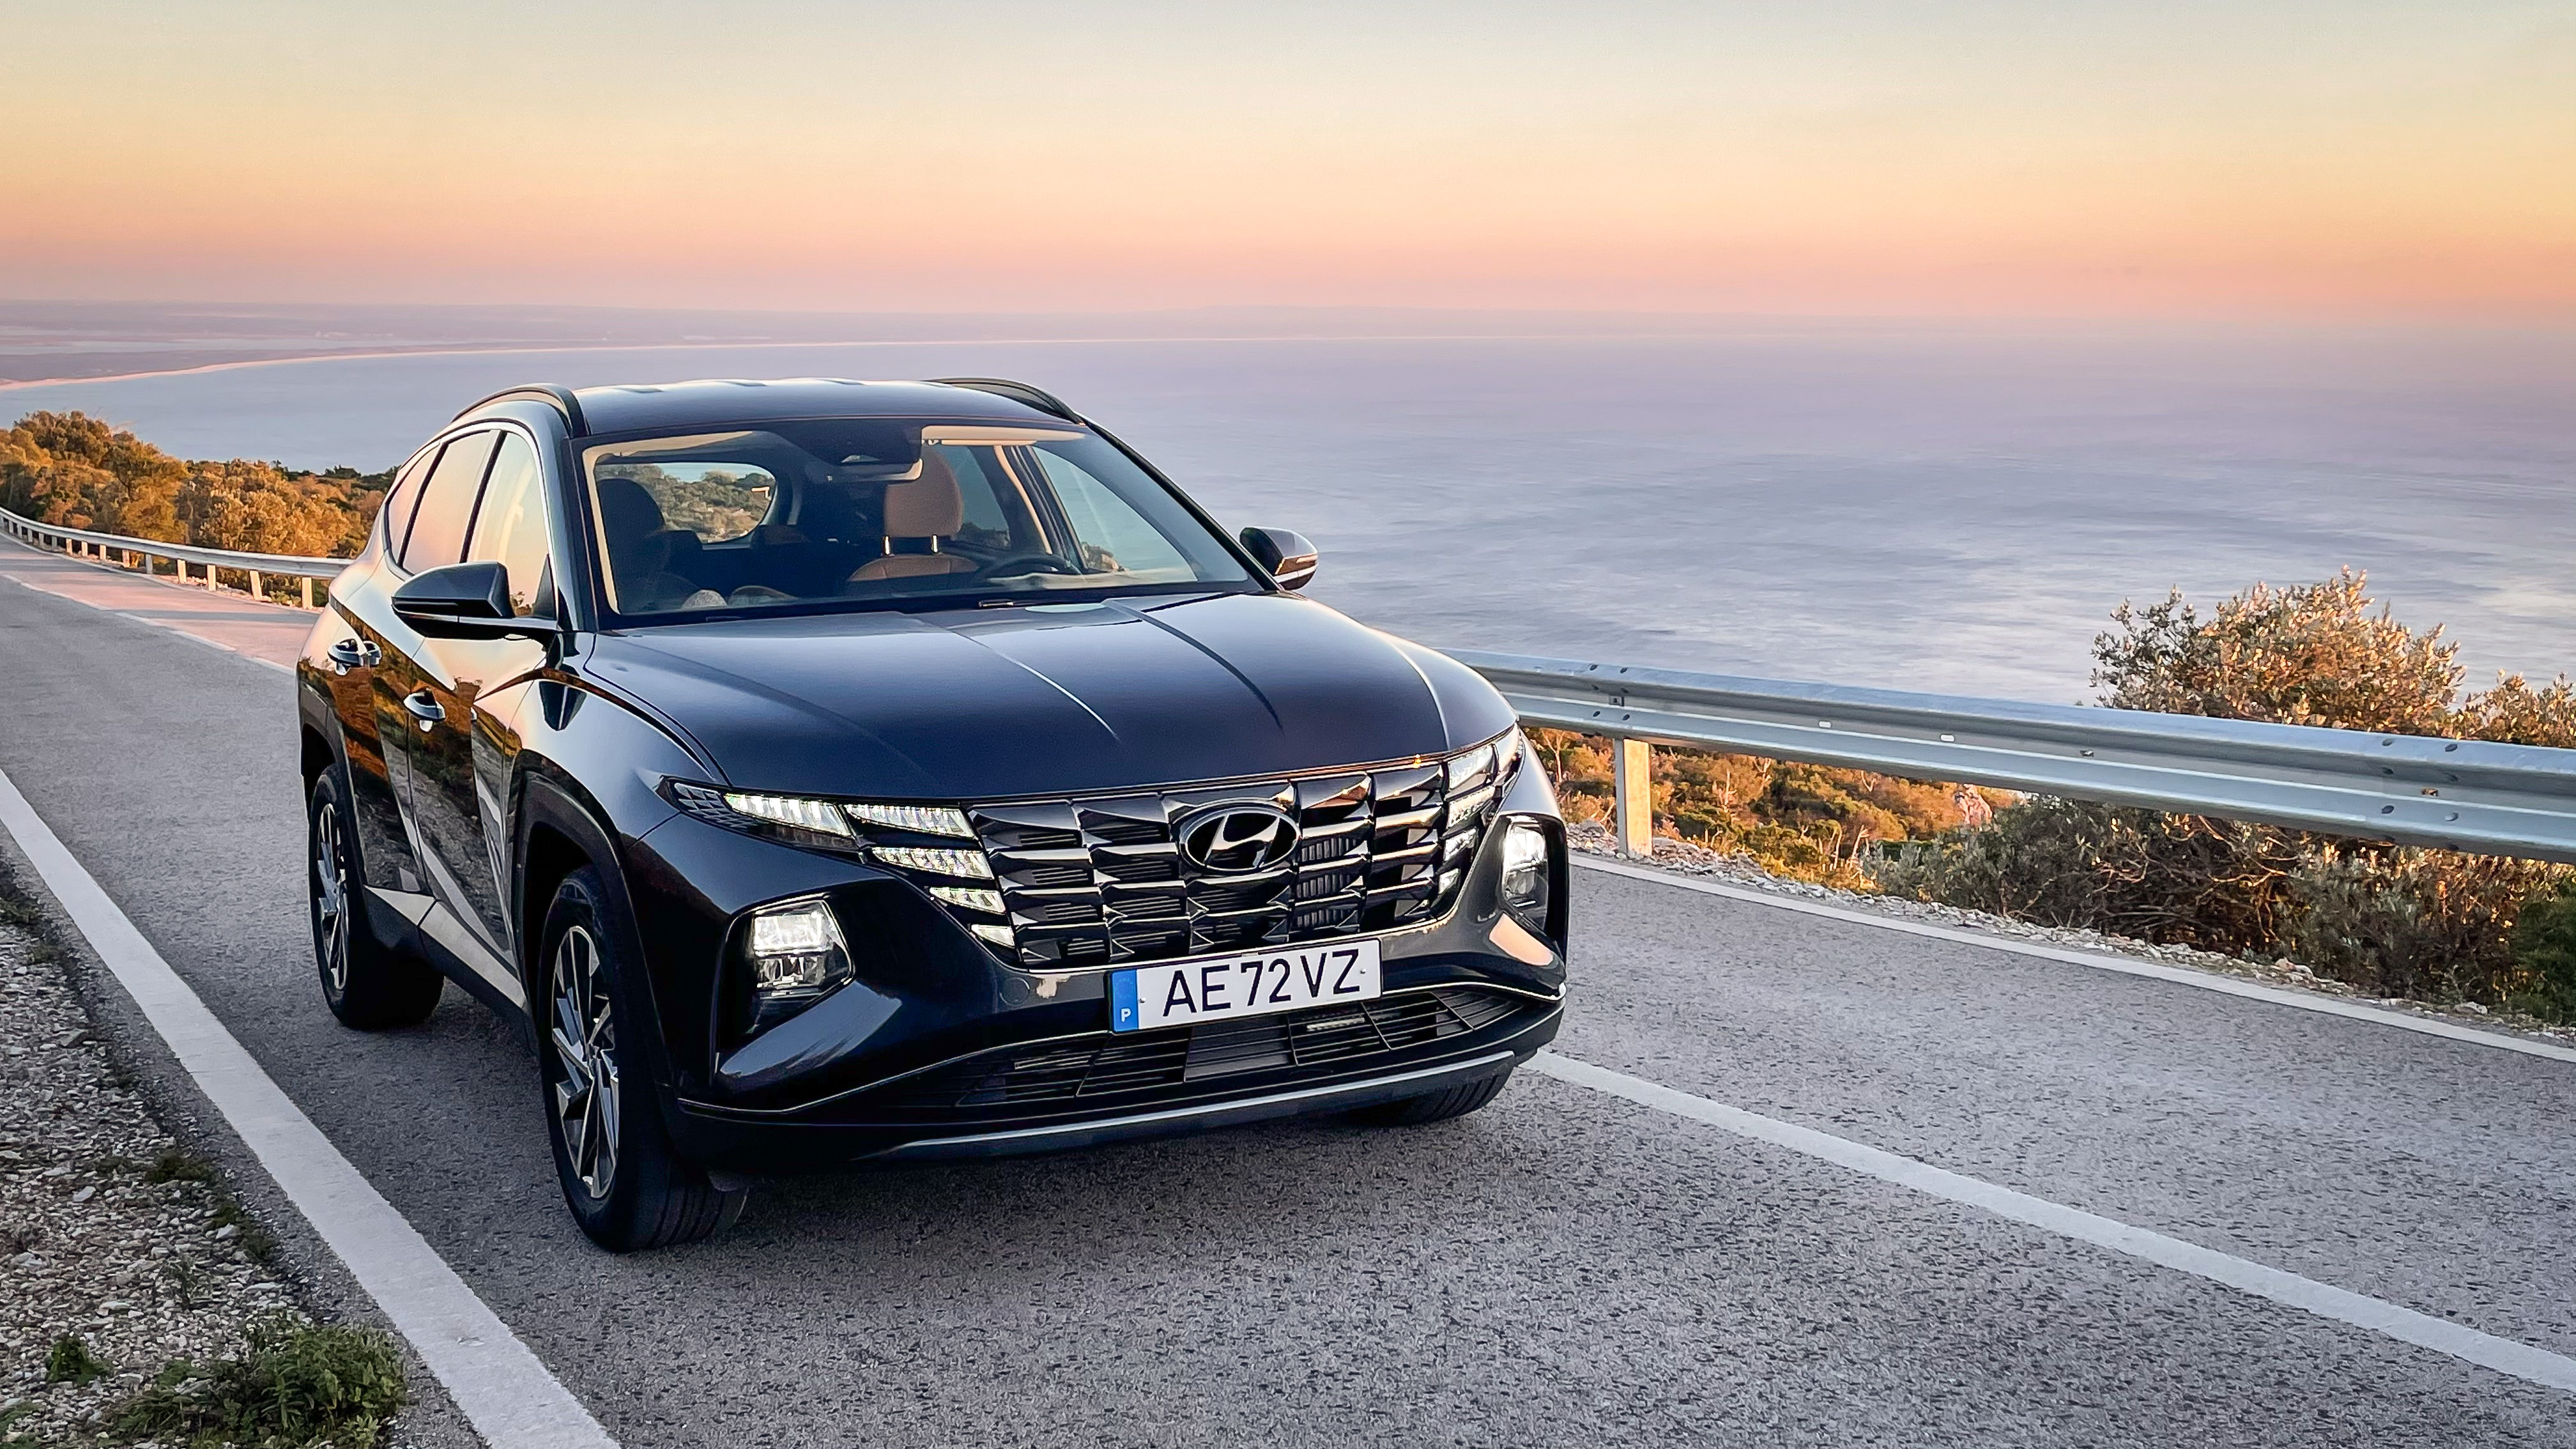 Primeiro contacto com o Hyundai Tucson em Portugal